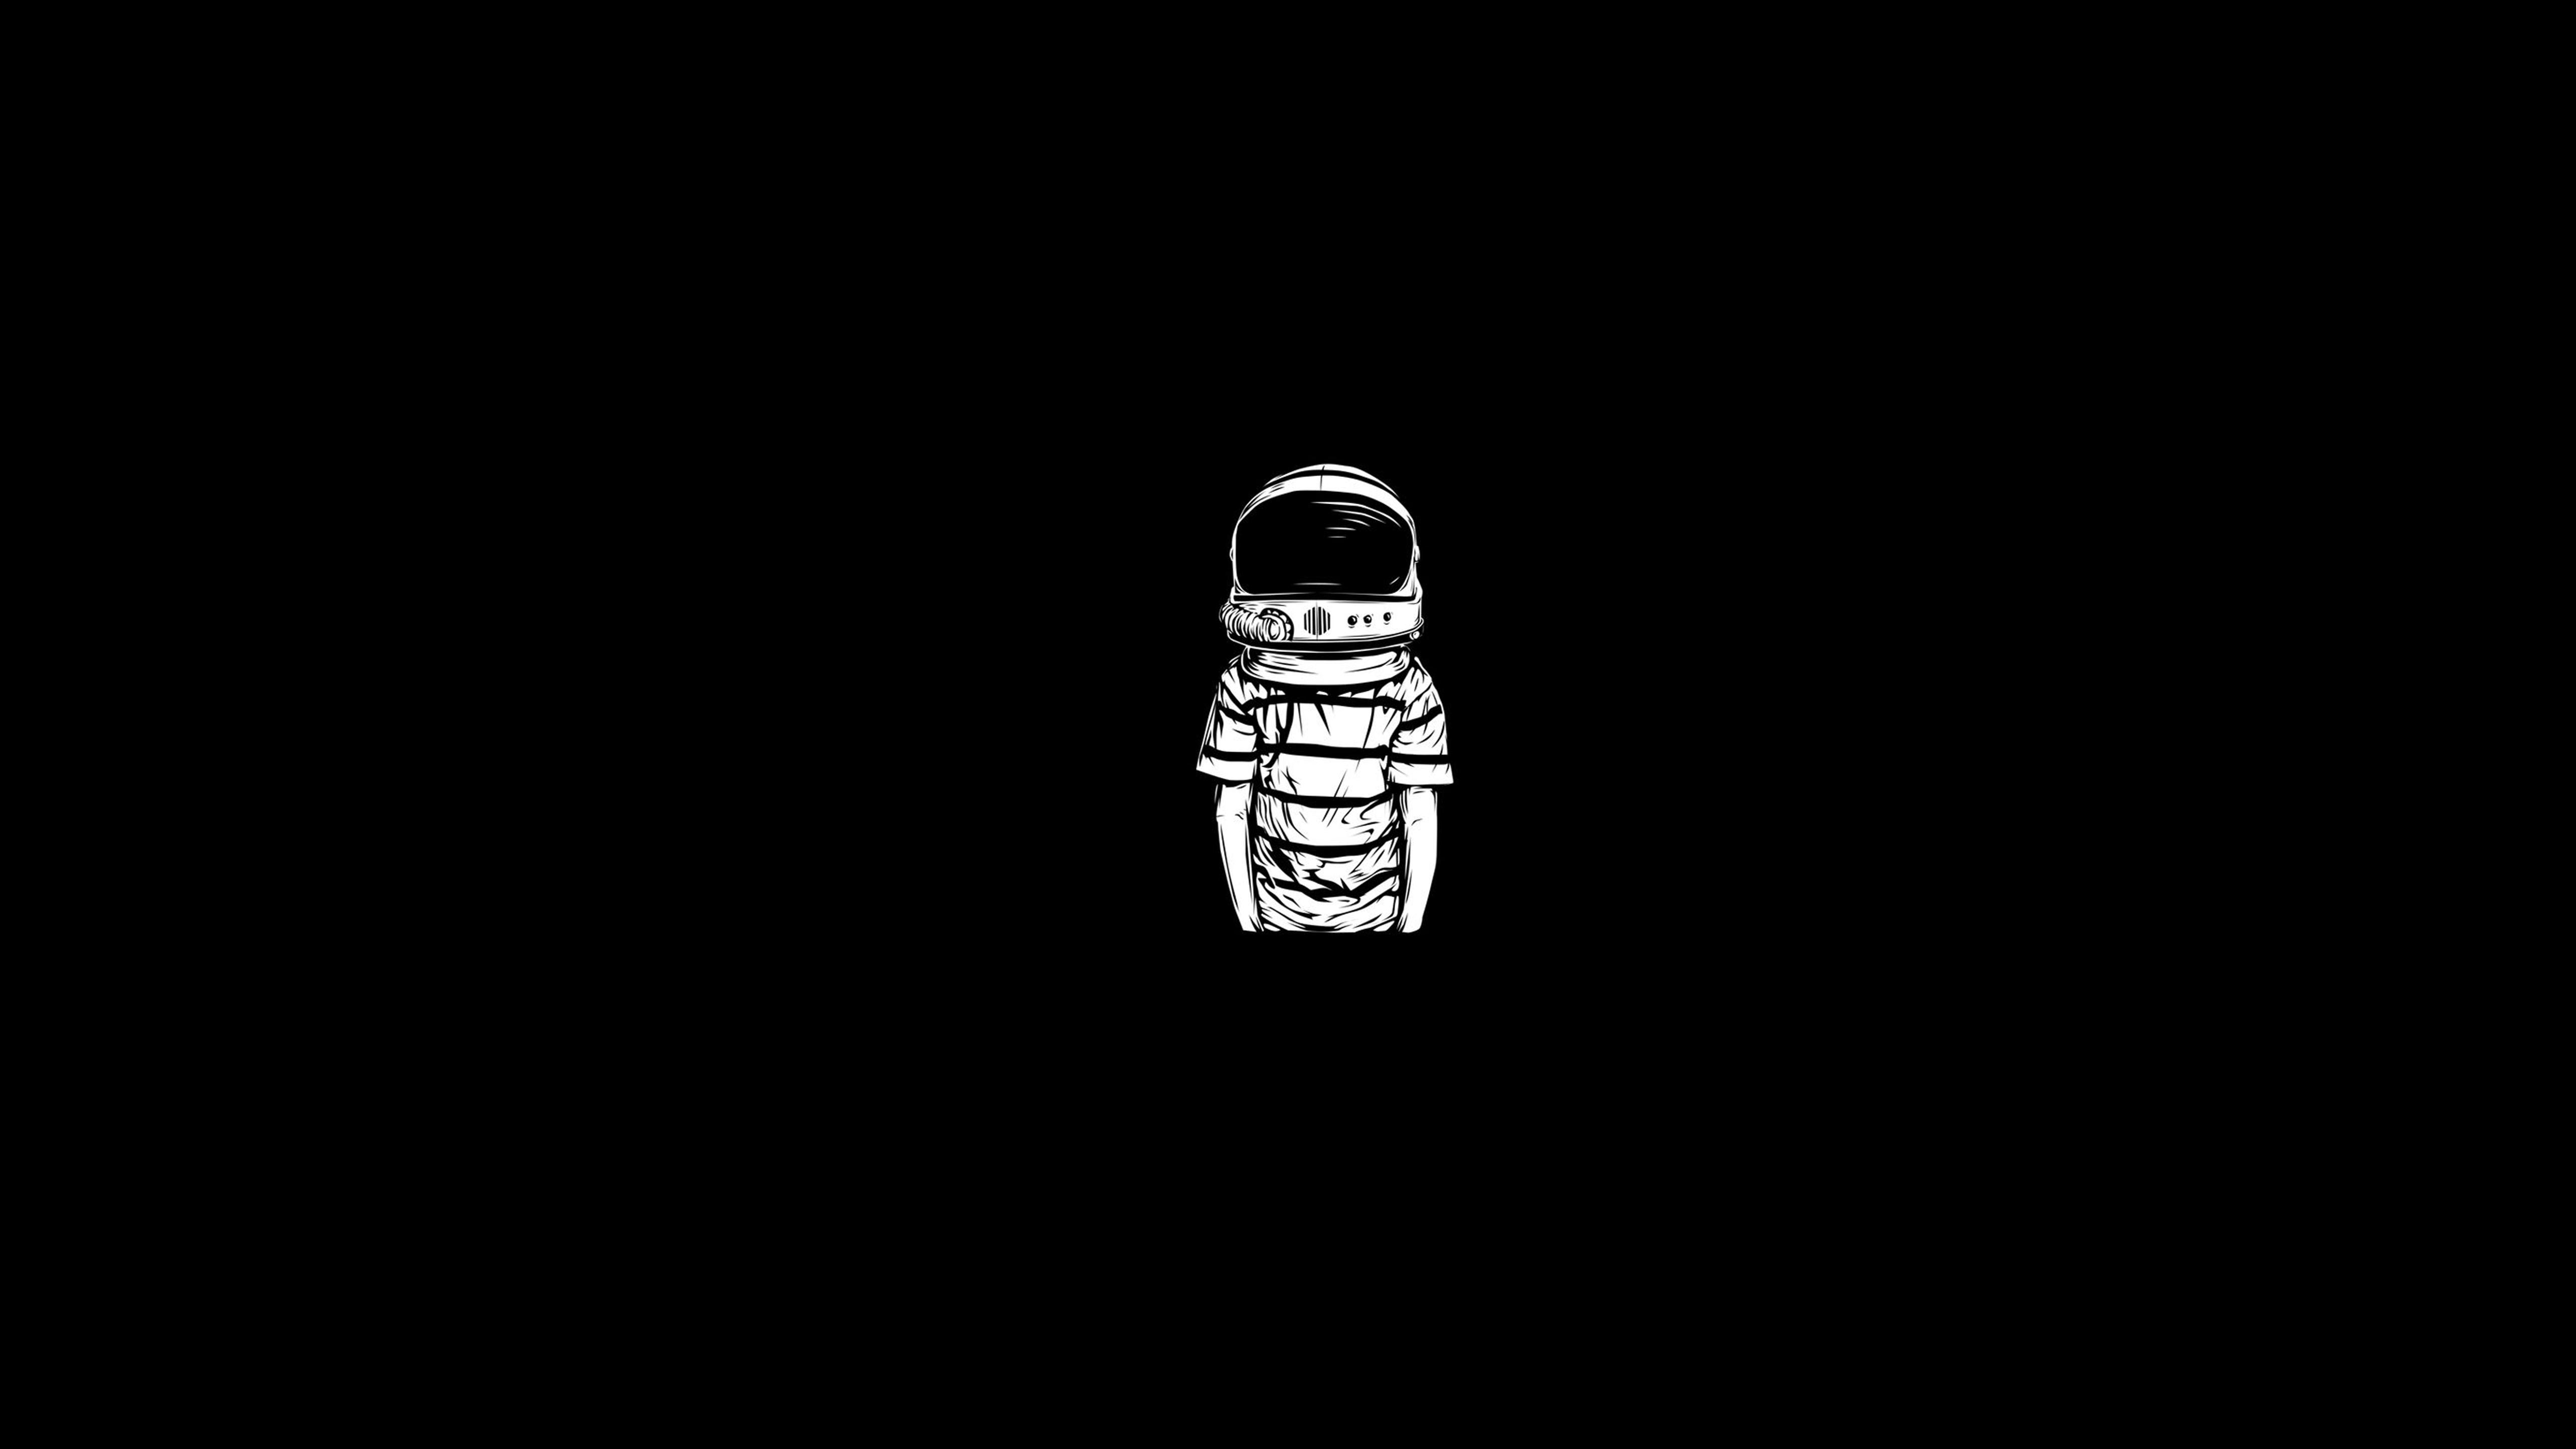 General 5120x2880 astronaut monochrome minimalism